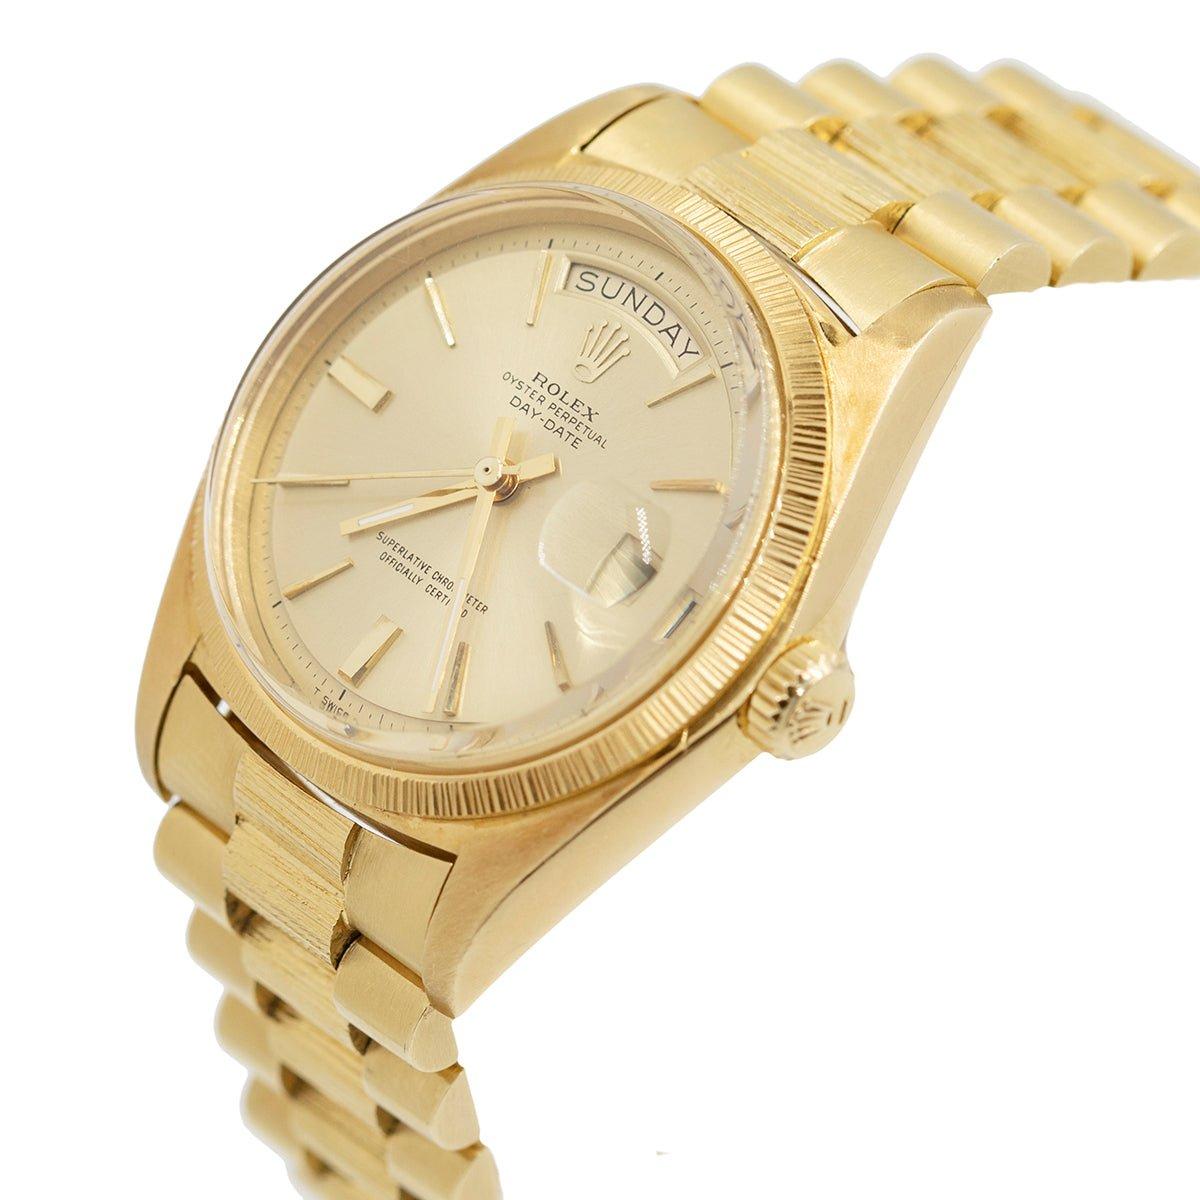 Montre-bracelet Rolex Day-Date des années 1970 (réf. 1807), dotée d'un mouvement automatique, d'un cadran champagne avec index appliqués en or, d'un guichet pour le jour de la semaine à 12 heures, d'un guichet pour la date à 3 heures, d'une aiguille